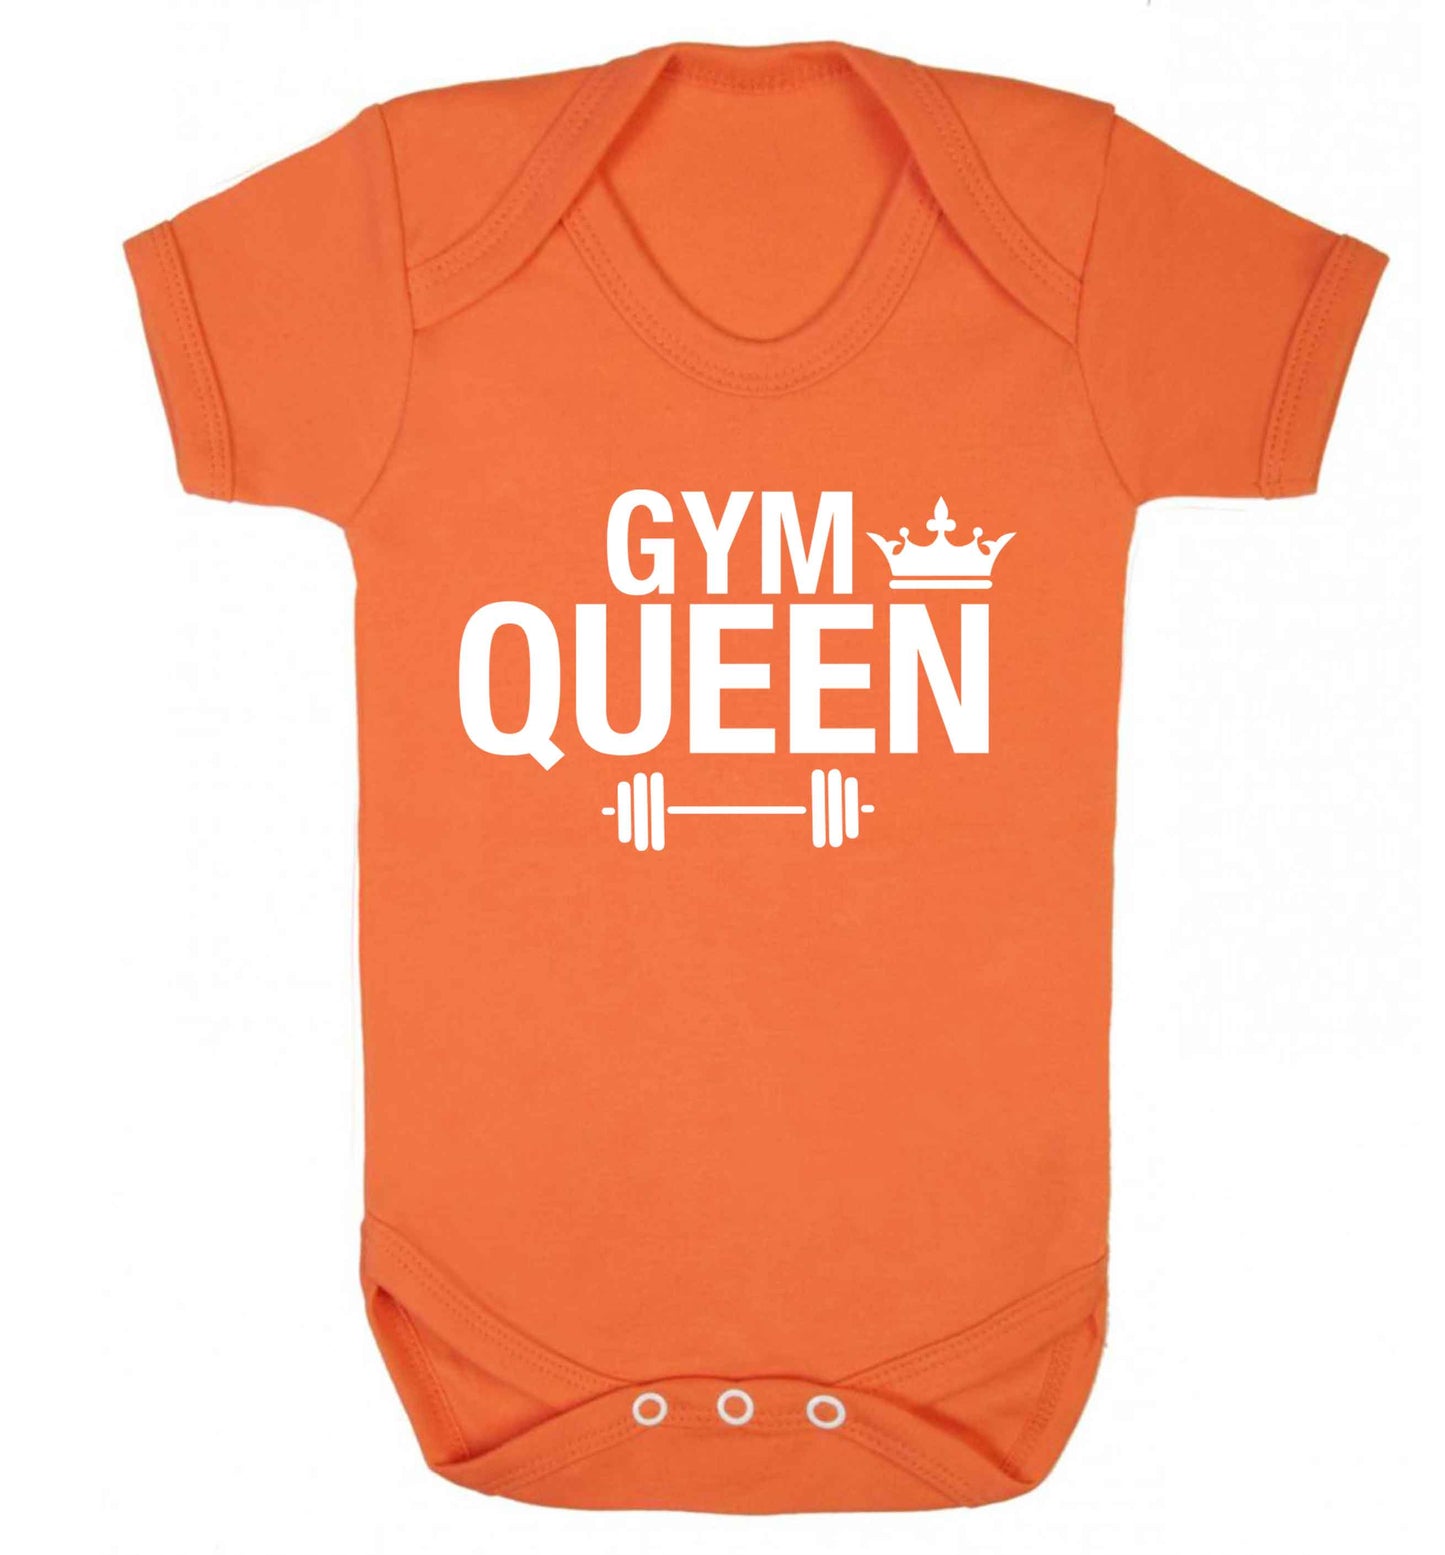 Gym queen Baby Vest orange 18-24 months